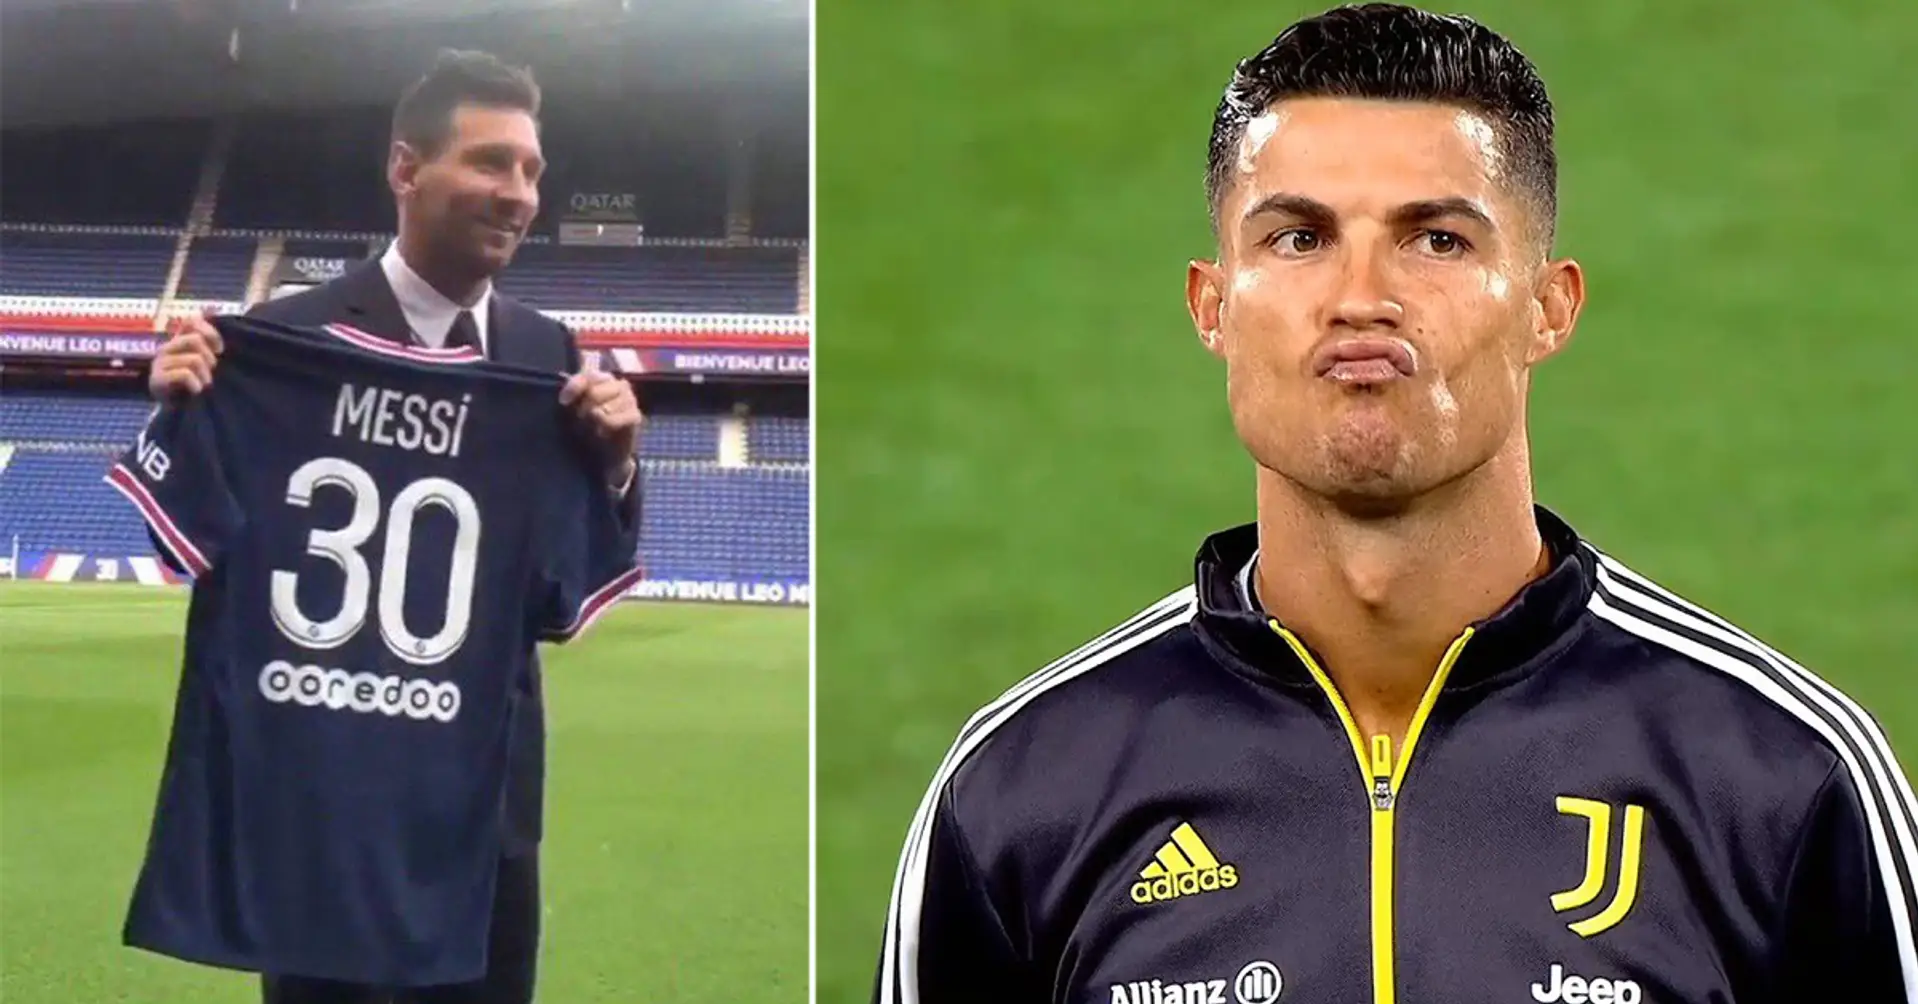 Un joueur de Ligue 1 demande à Cristiano de rejoindre Lille pour rivaliser avec Messi. Ronaldo répond "Ha ha ha"